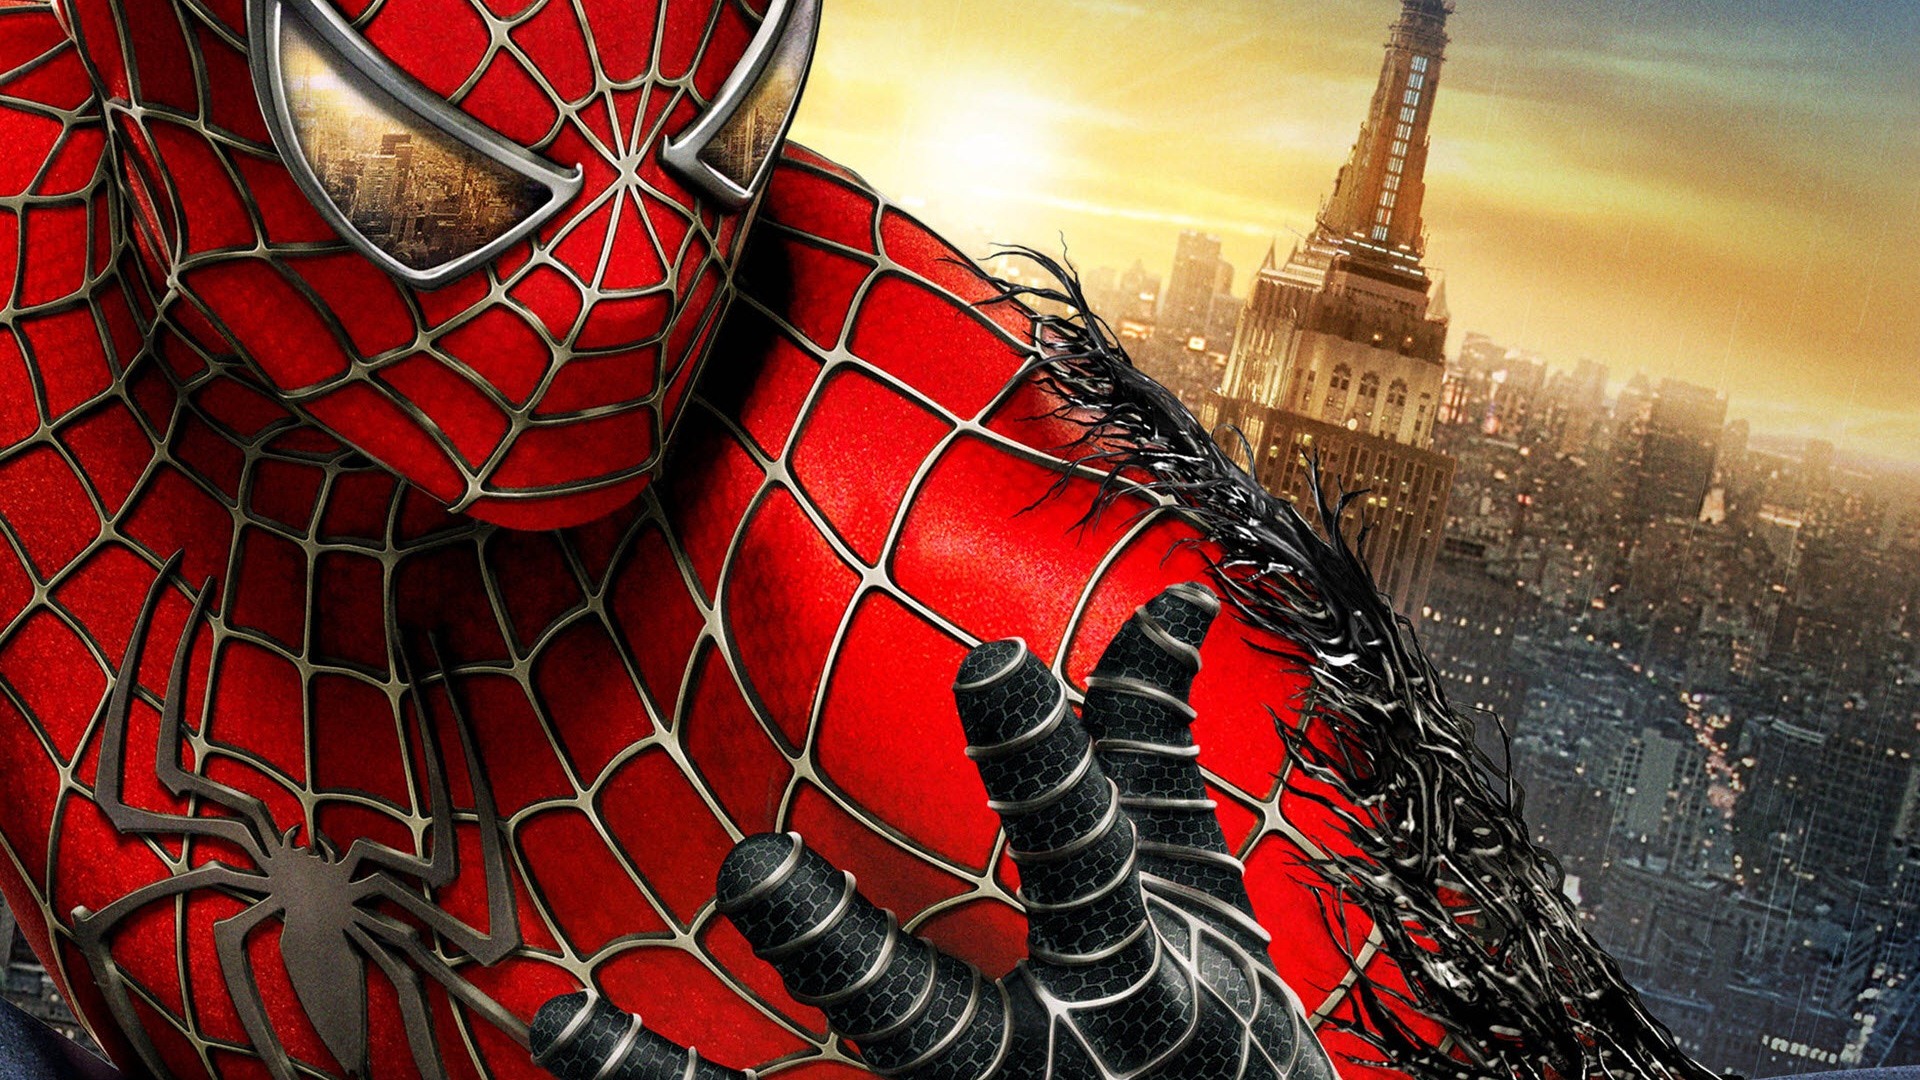 The Amazing Spider-Man 2012 惊奇蜘蛛侠2012 壁纸专辑13 - 1920x1080